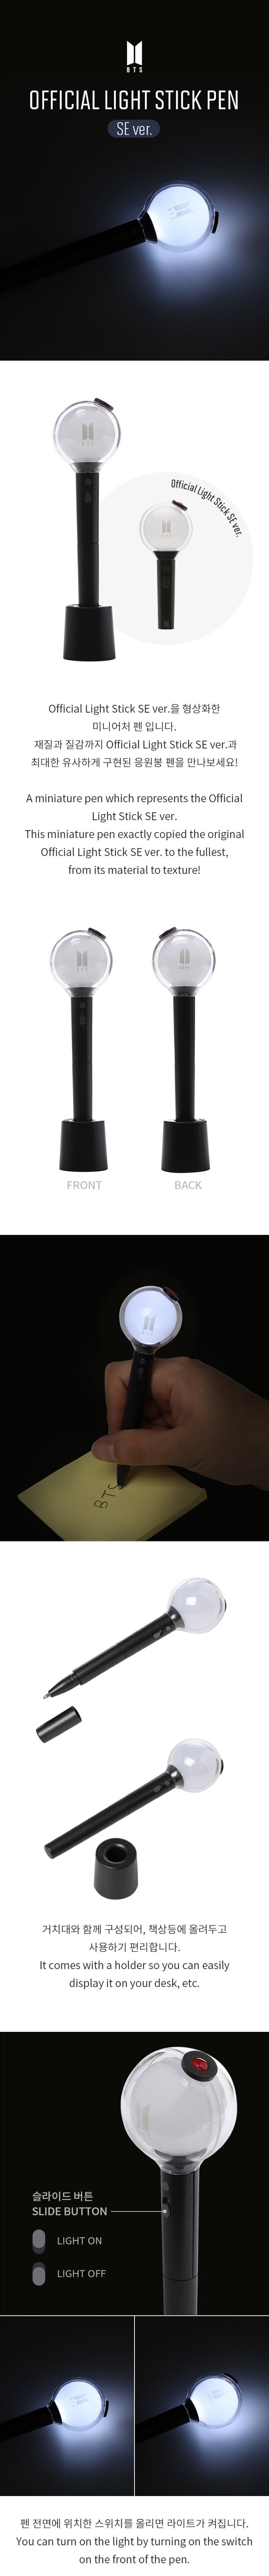 BTS Offizieller Lightstick Pen SE Ver.